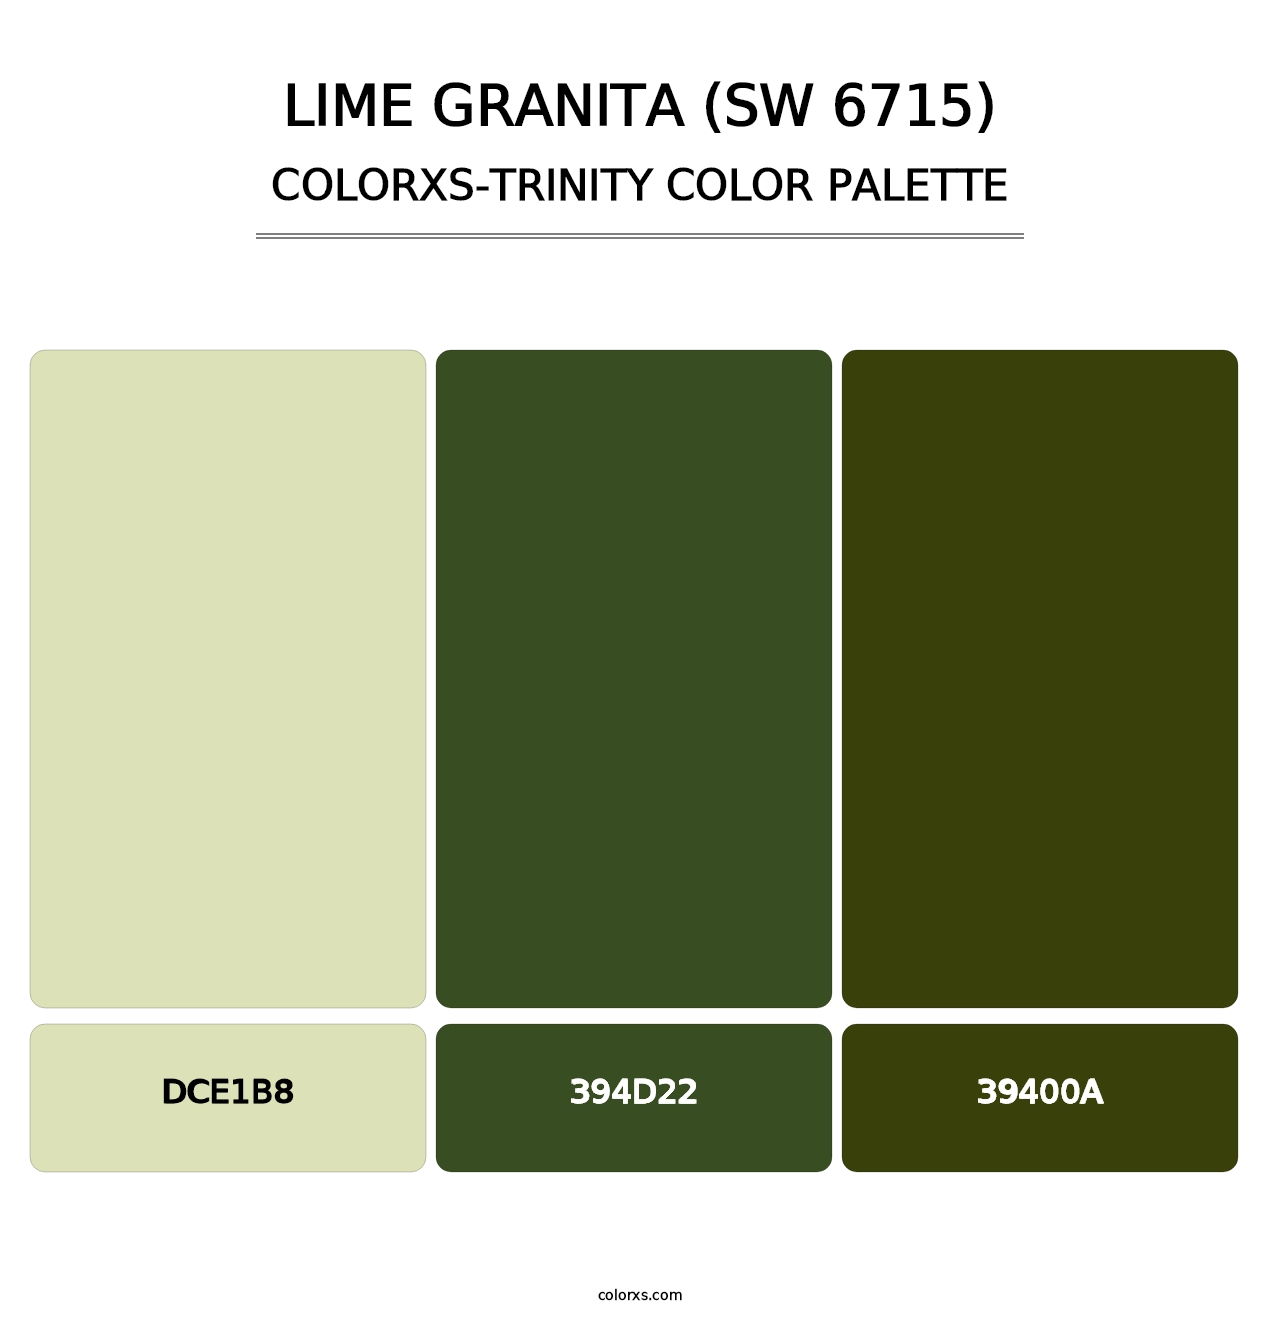 Lime Granita (SW 6715) - Colorxs Trinity Palette